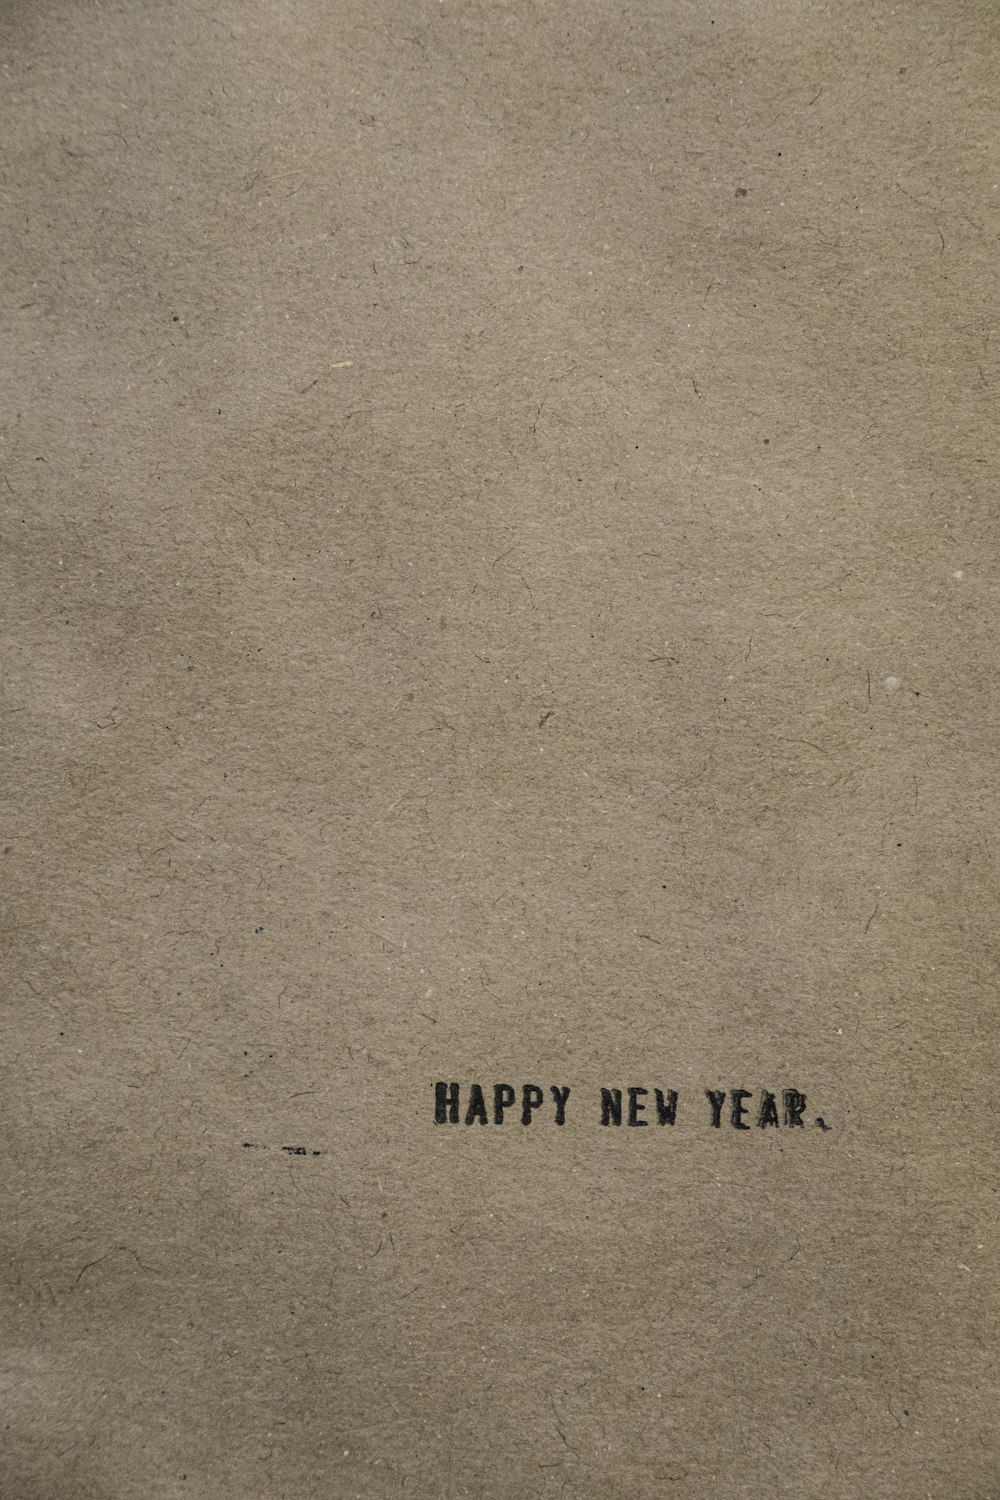 새해 복 많이 받으세요라는 글자가 적힌 갈색 종이 한 장